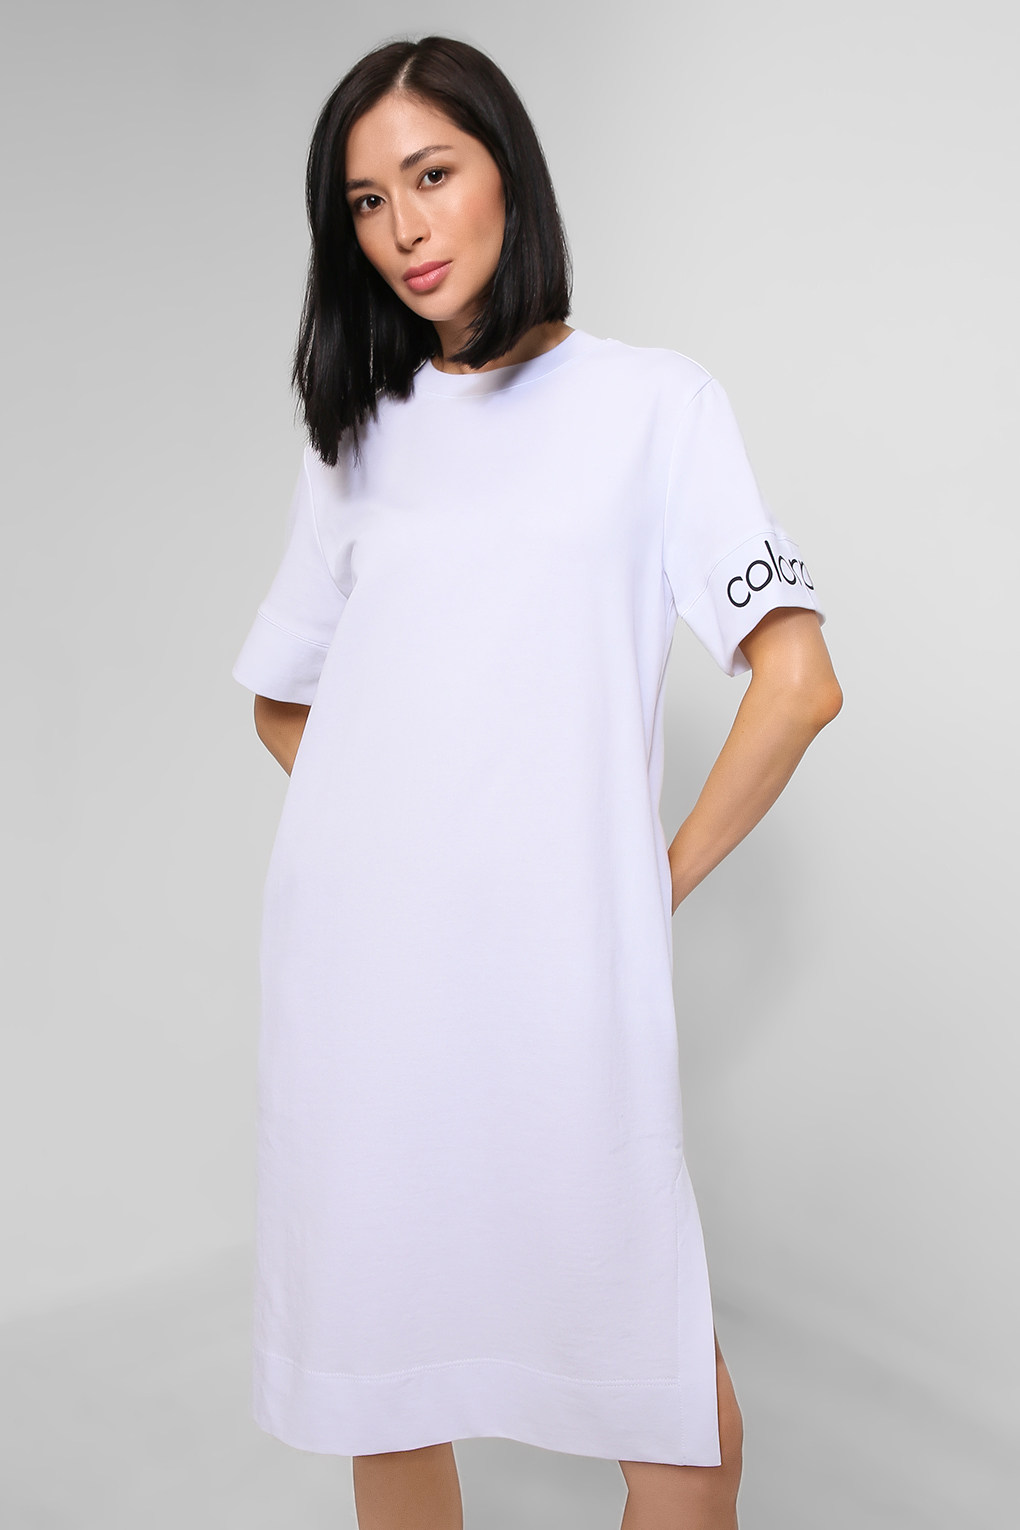 Платье женское COLORPLAY CP22045278-002 белое S